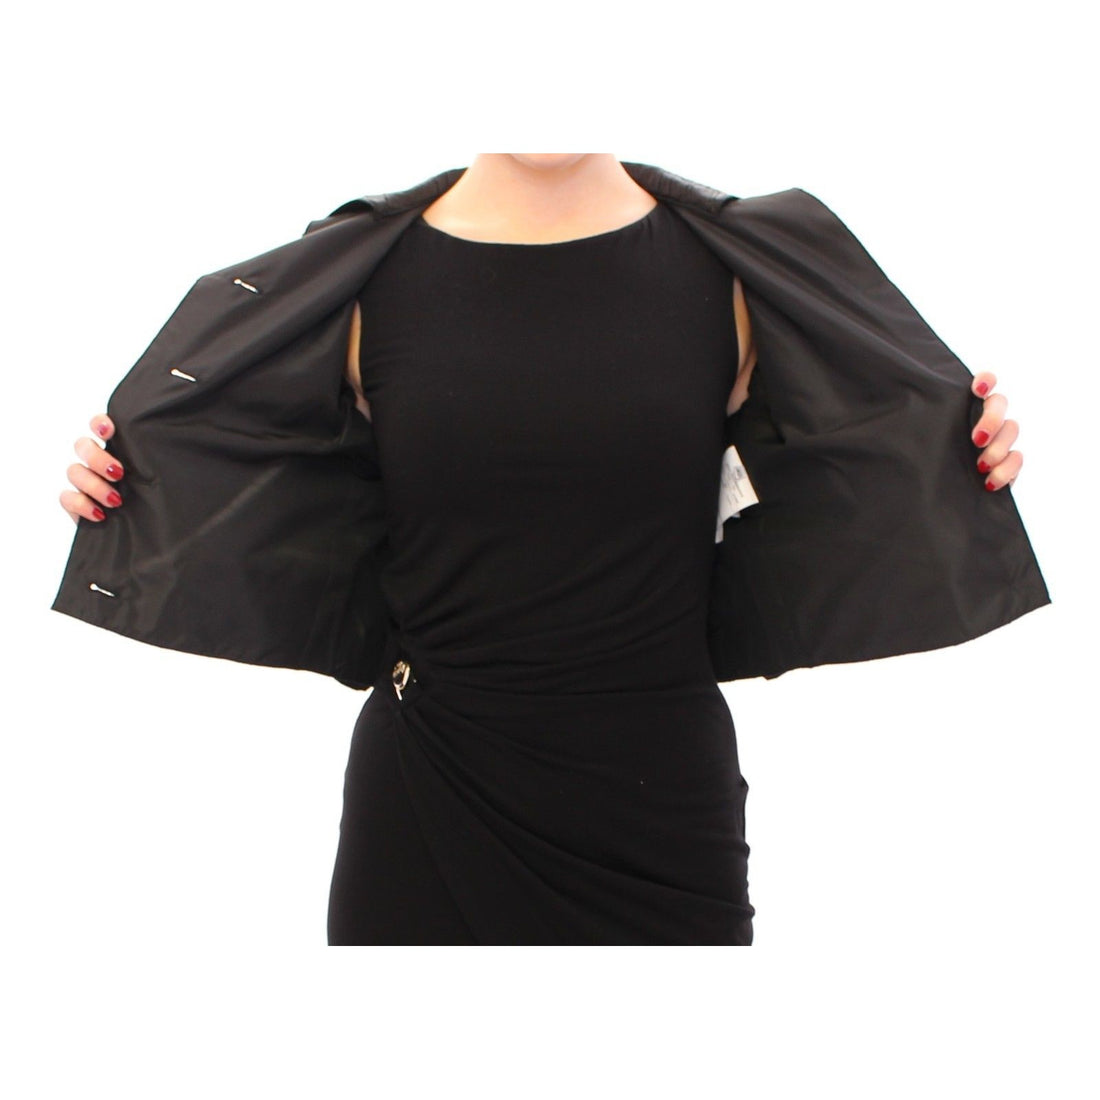 Dolce & Gabbana Black Short Bolero Shrug Jacket Coat - Paris Deluxe